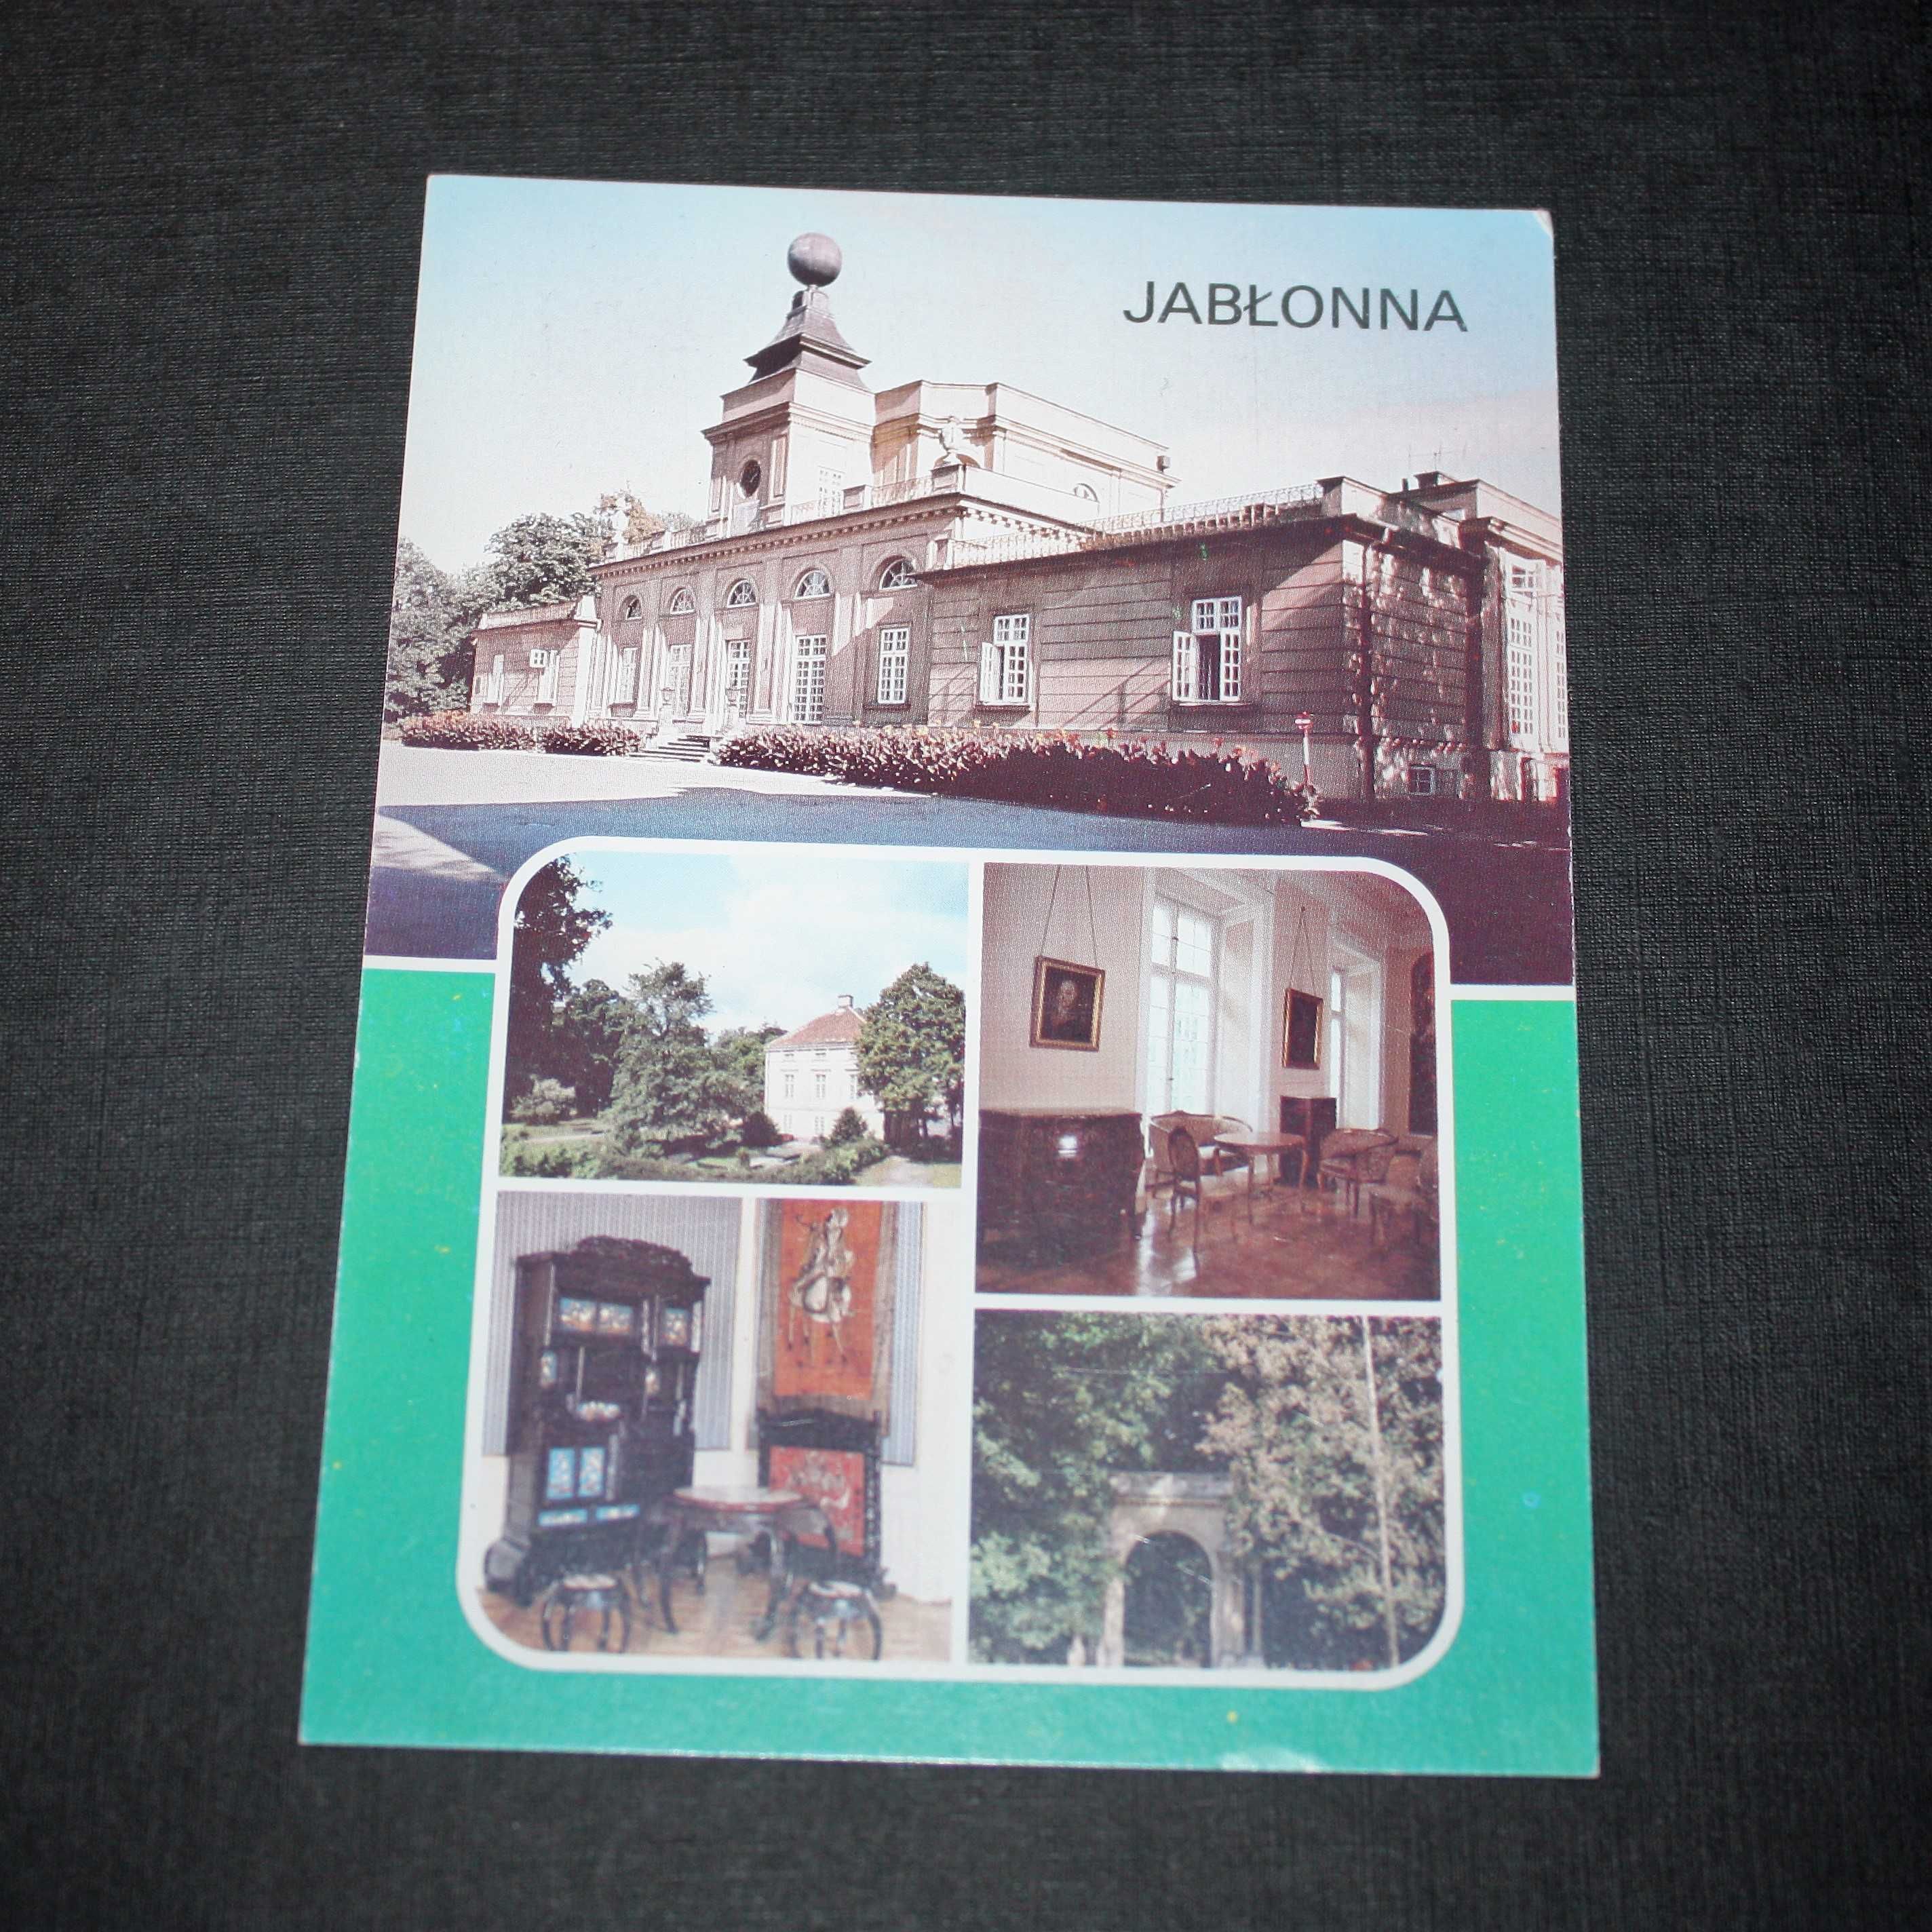 JABŁONNA - klasycystyczny pałac  - stara pocztówka 1985